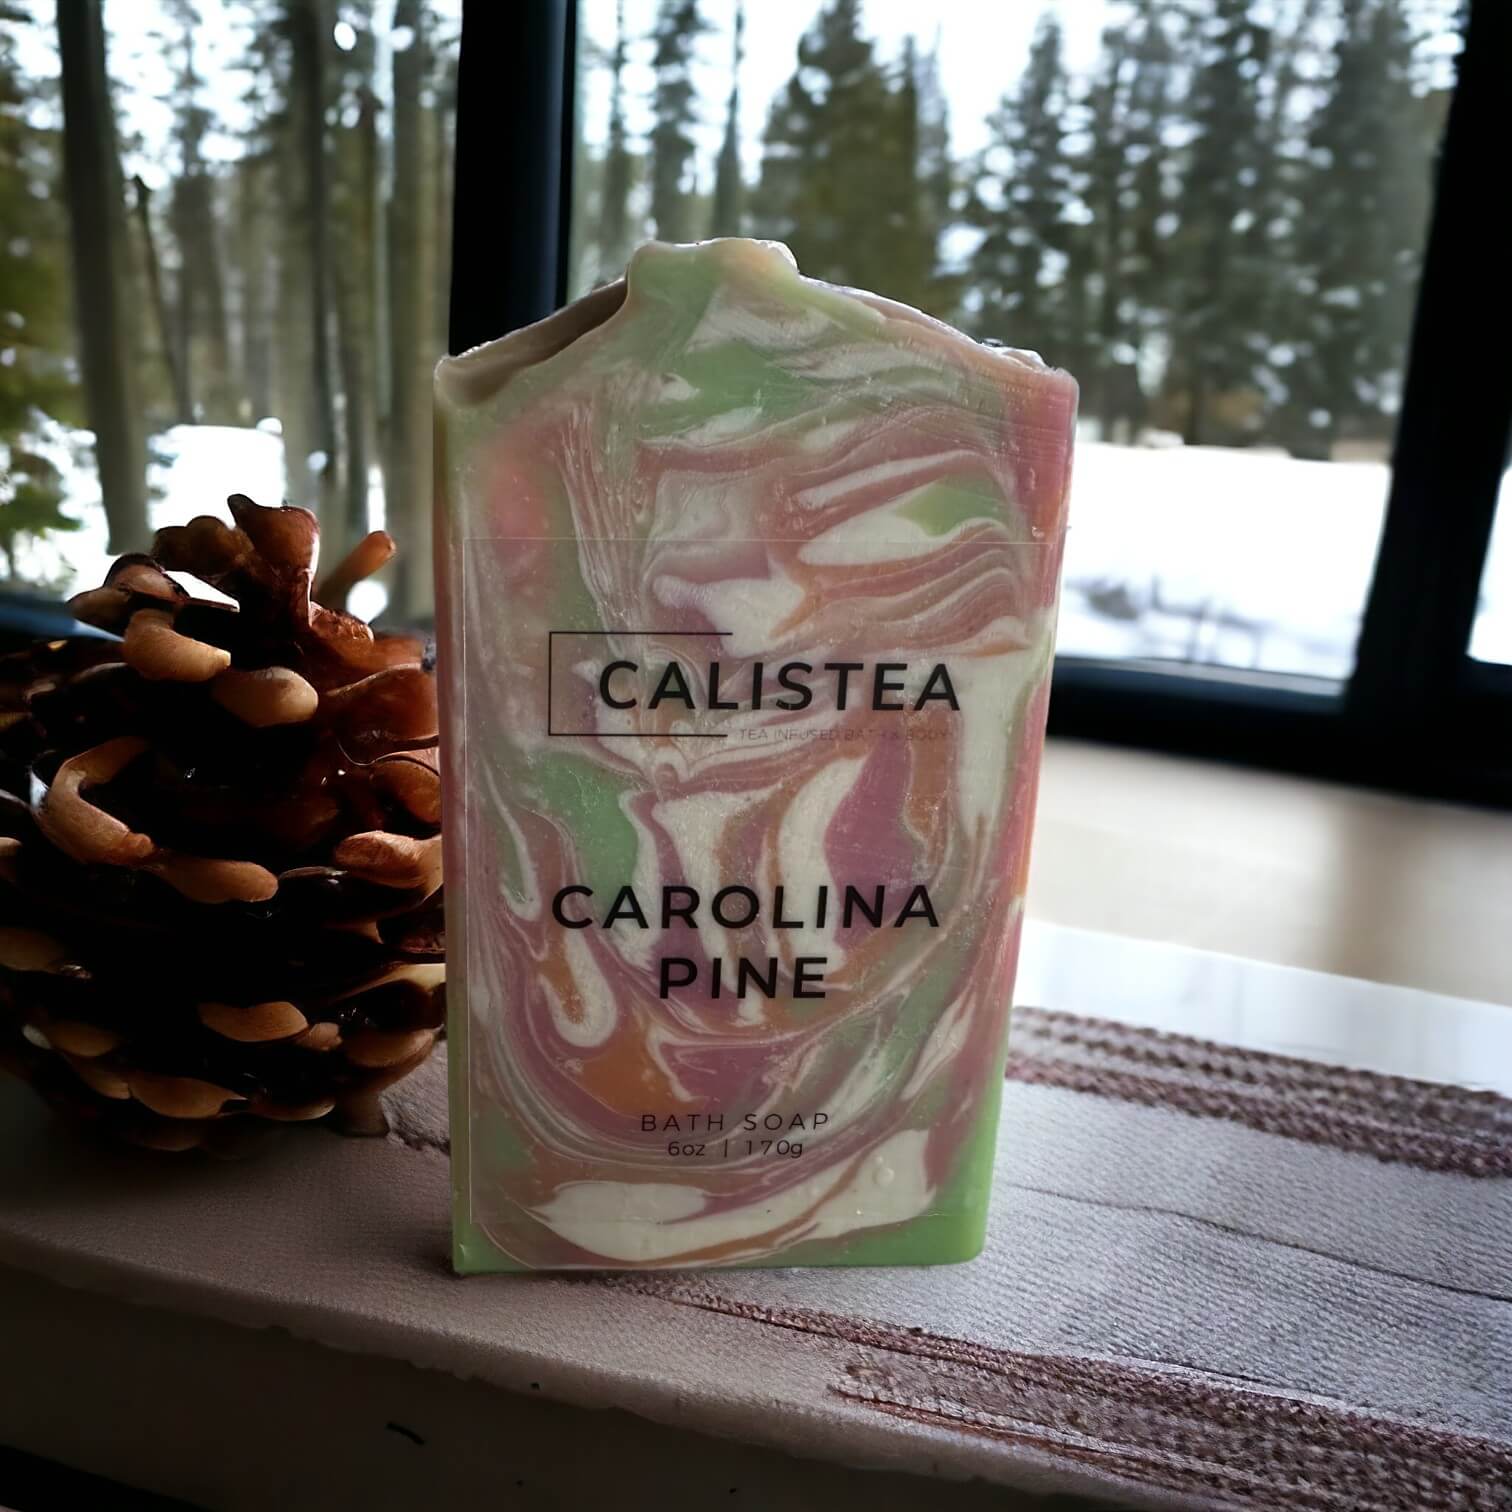 Carolina Pine - Calistea